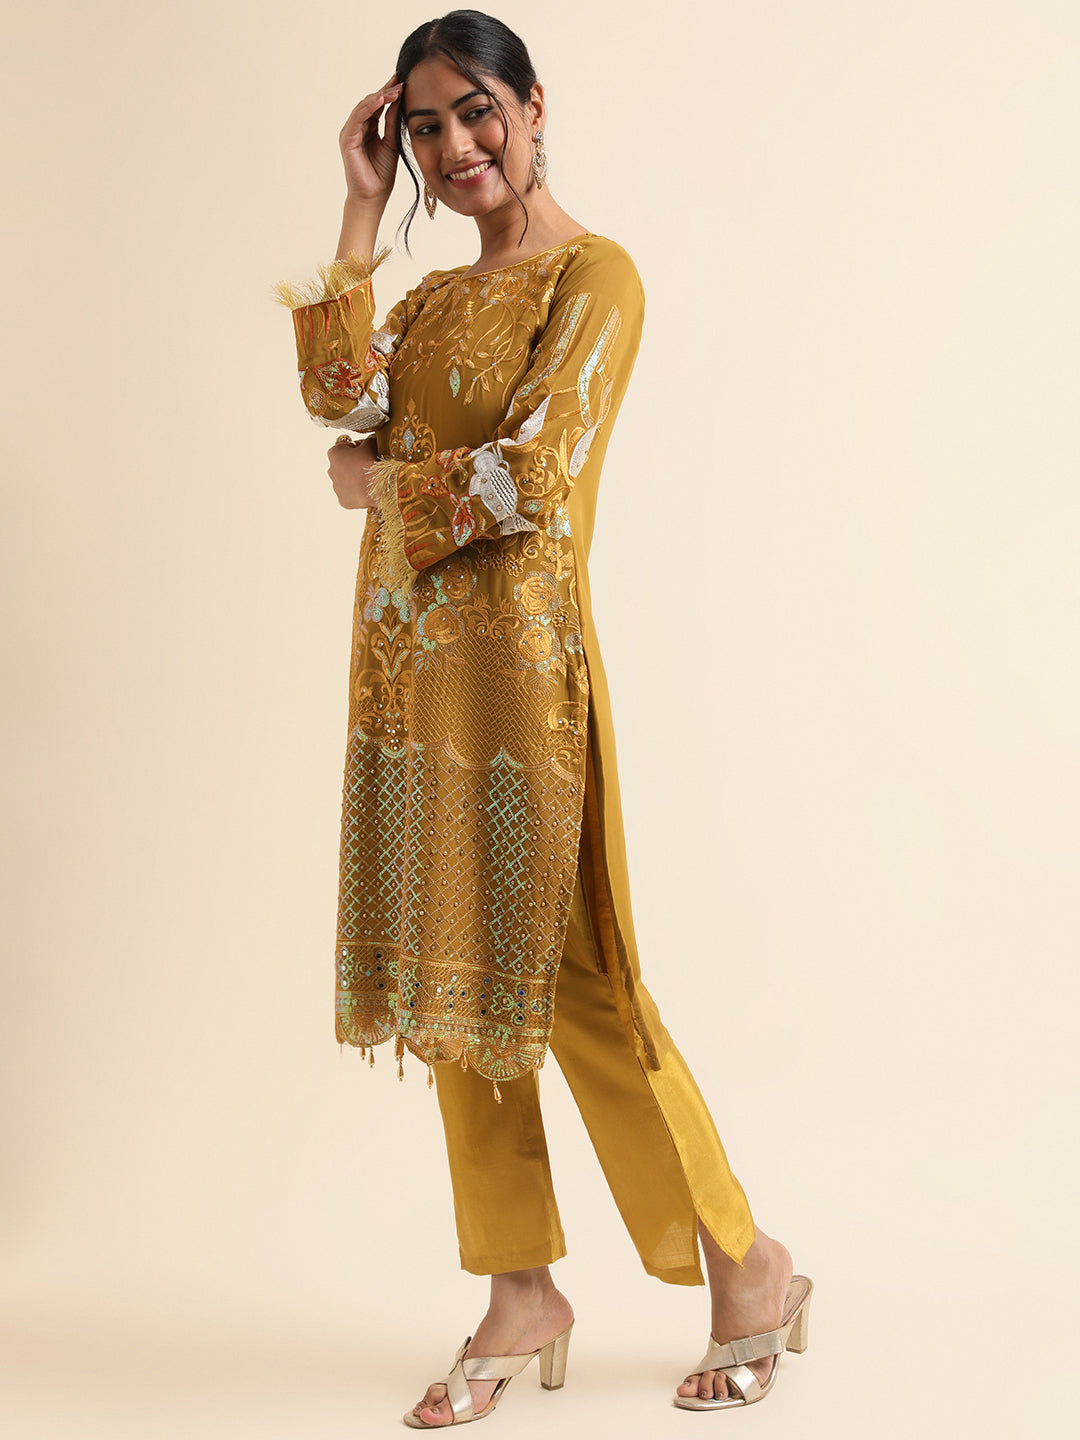 Stylish Pakistani Suit: Exude Elegance and Charm